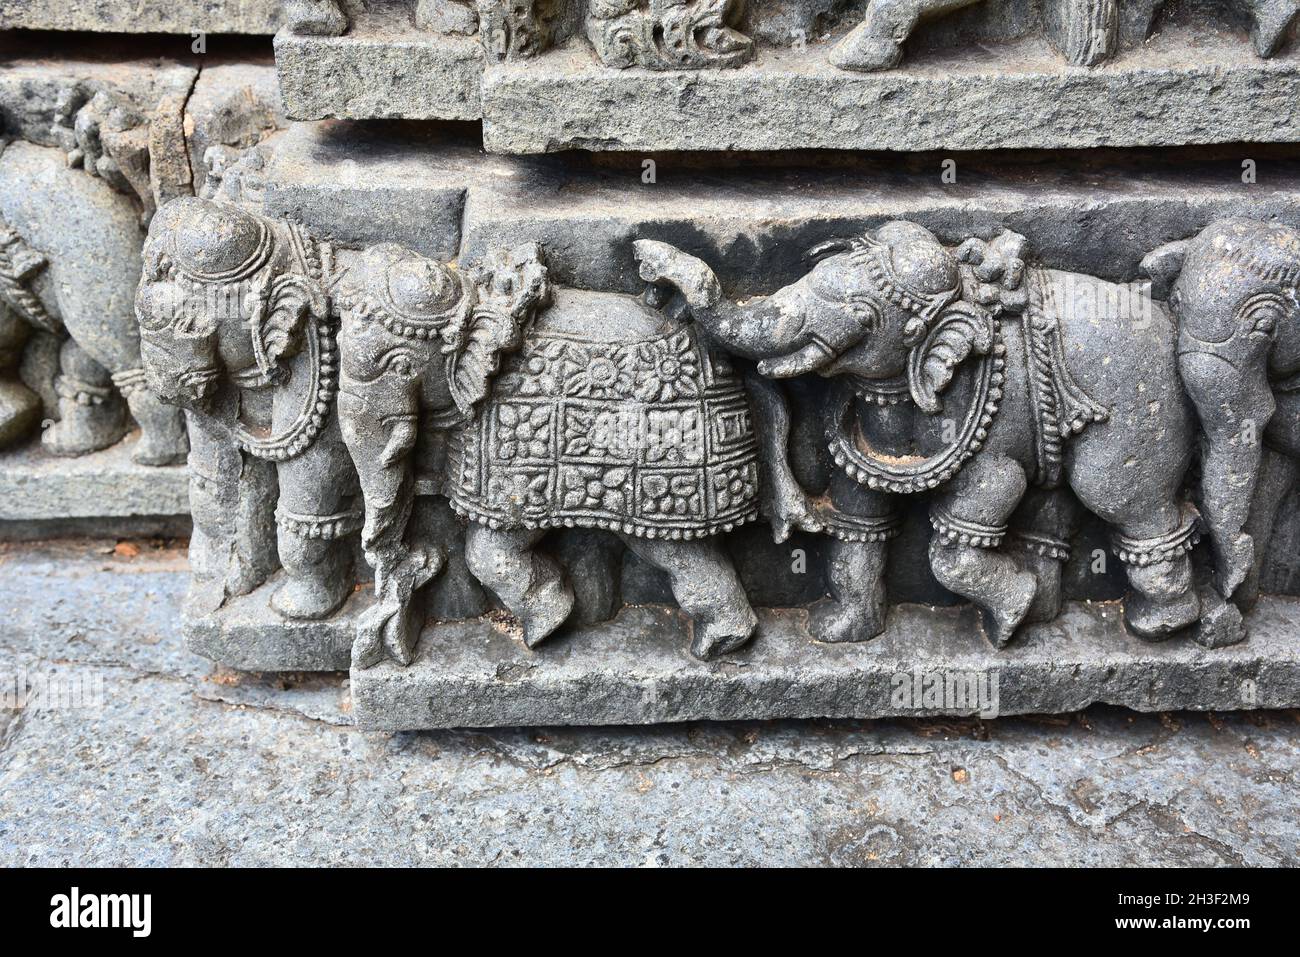 sculptures complexes en pierre d'éléphant au temple de chennakeshava, somnathpur, mysore, inde Banque D'Images